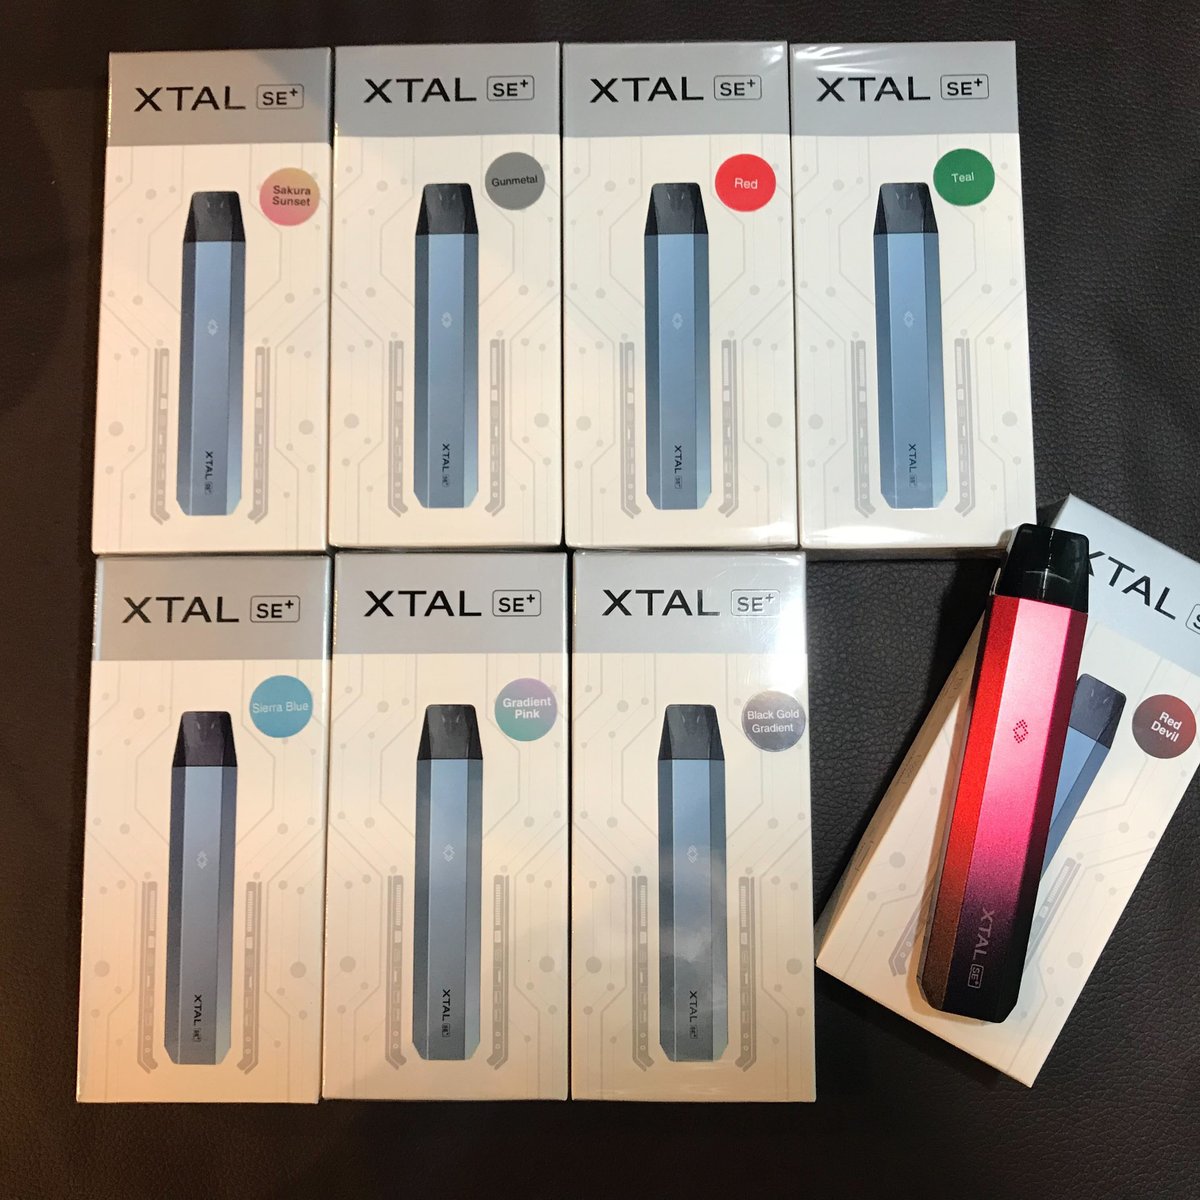 Hilaxです✨ 大人気！ XTALシリーズがまた進化した🫣‼️ 「 XTAL SE+ 」 SEからの変更点 バッテリー🔋520mAhから800mAhへ増量 充電🔌Micro-USBからType-C 変更 従来のXTALシリーズの交換PODも 互換性あり🥺✨ 新色もかっこいい🎨 気になる方はこちらからcheck▼ item.rakuten.co.jp/hilax2/zqxtalk…